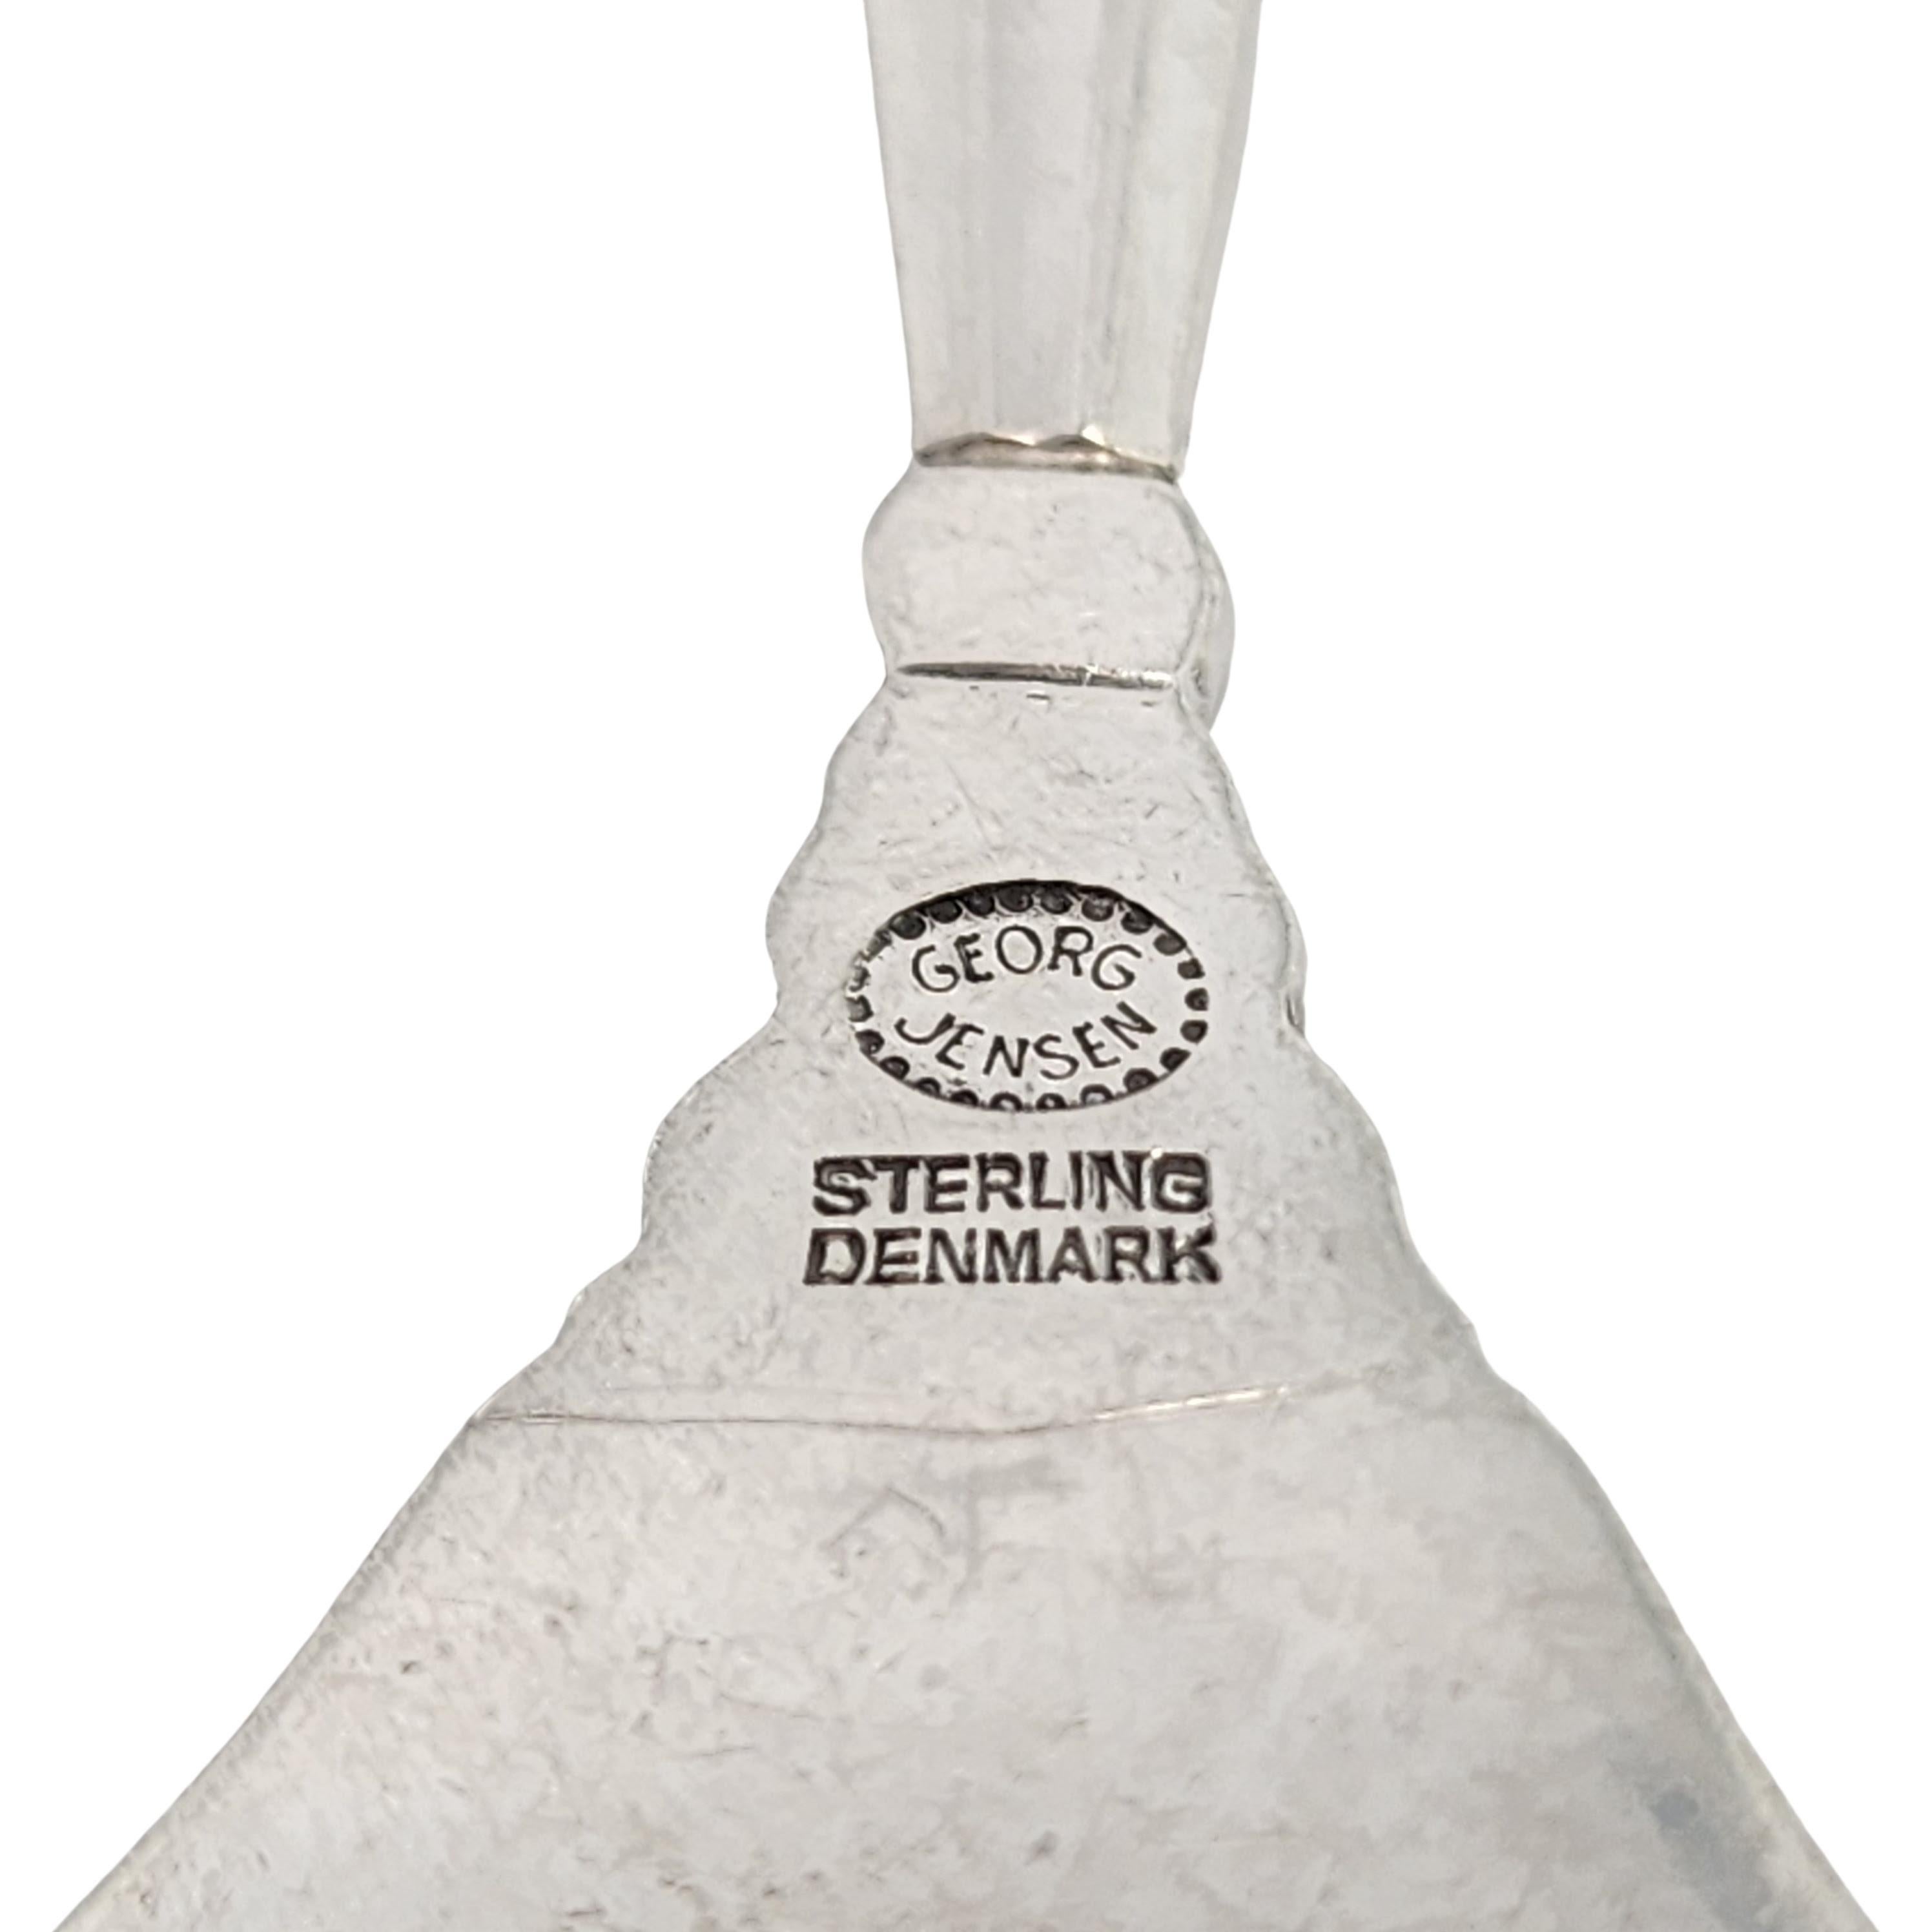 Georg Jensen Denmark Acorn Sterling Silver Sardine Serving Fork #16891 4